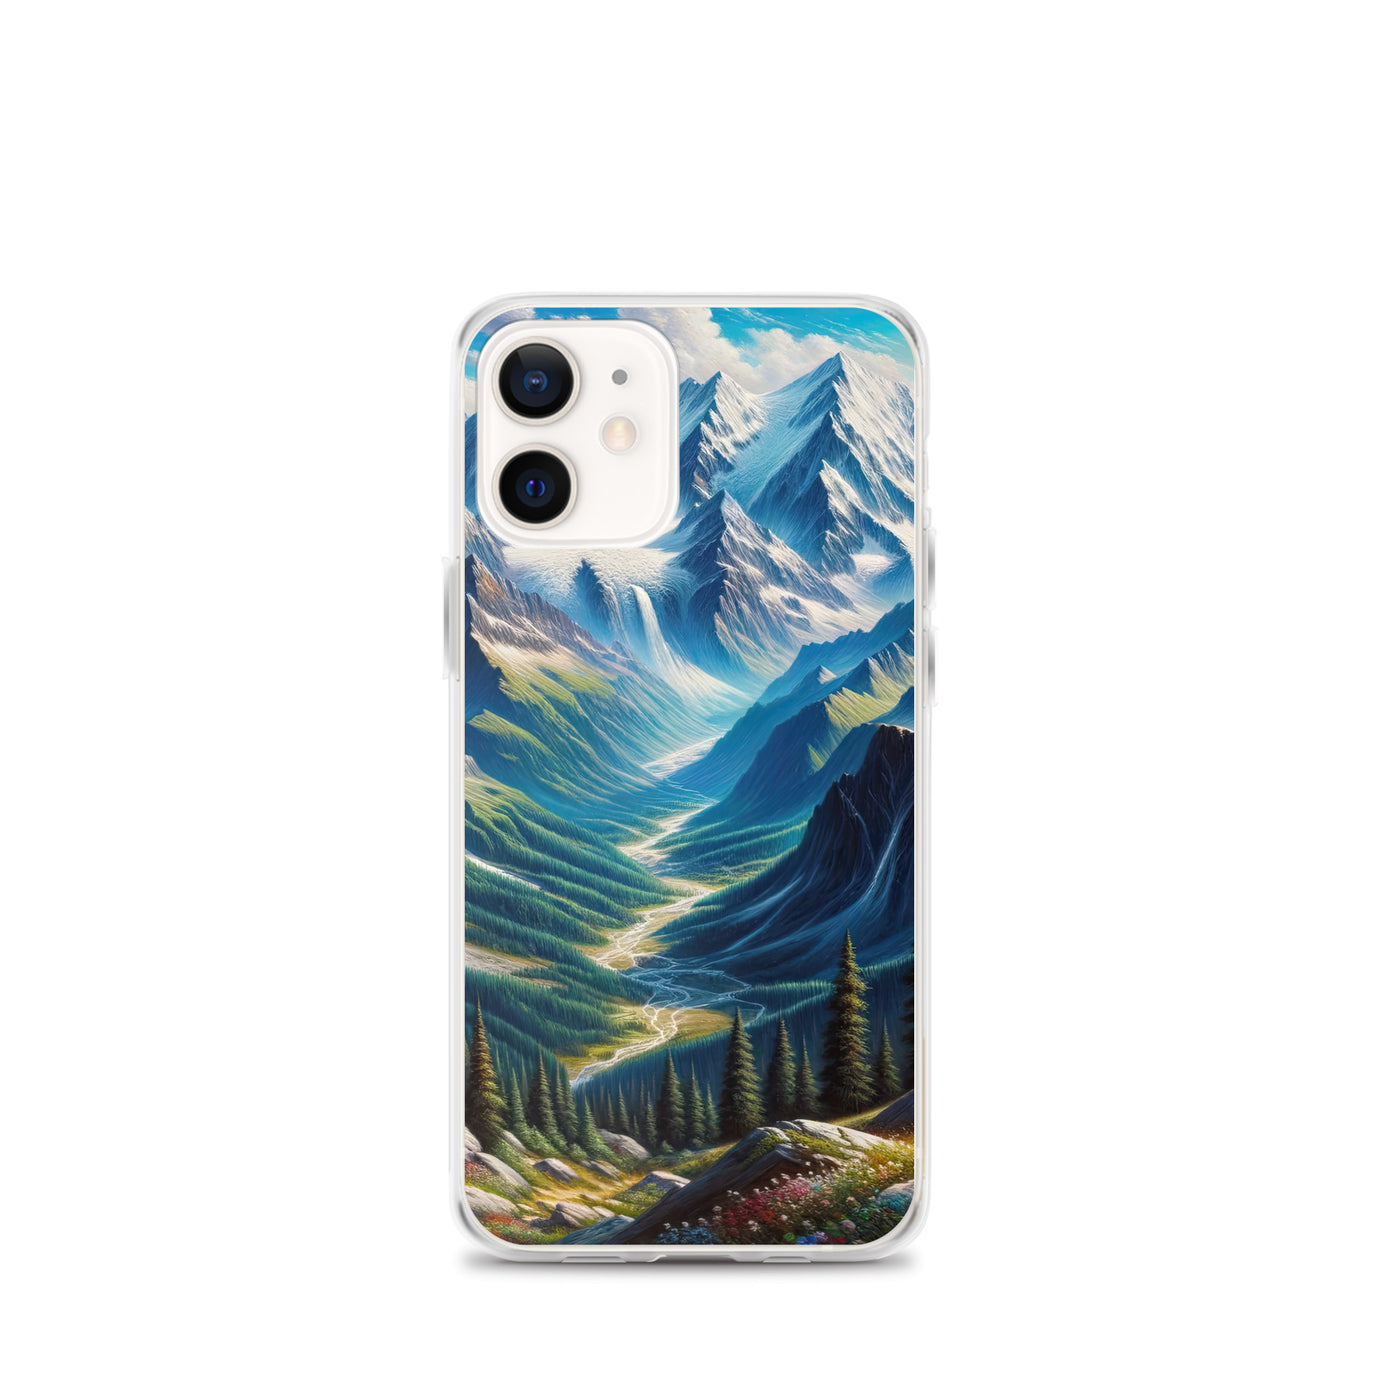 Panorama-Ölgemälde der Alpen mit schneebedeckten Gipfeln und schlängelnden Flusstälern - iPhone Schutzhülle (durchsichtig) berge xxx yyy zzz iPhone 12 mini